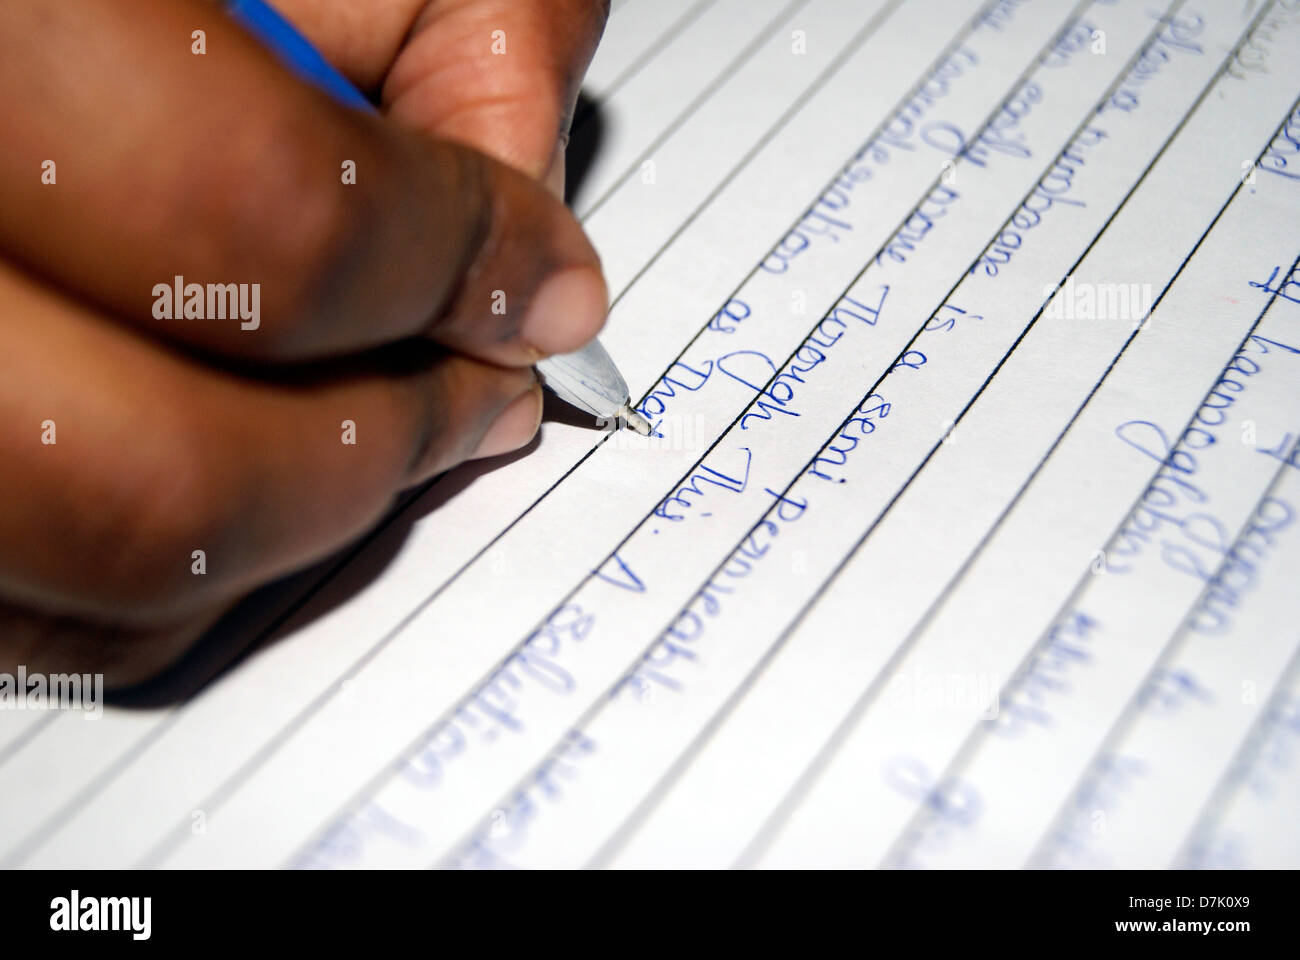 Schüler schreiben in Projekt Hinweis Buch mit blauen Stift für Prüfung, College Girl Hand schreiben und Stift Fokusansicht Stockfoto